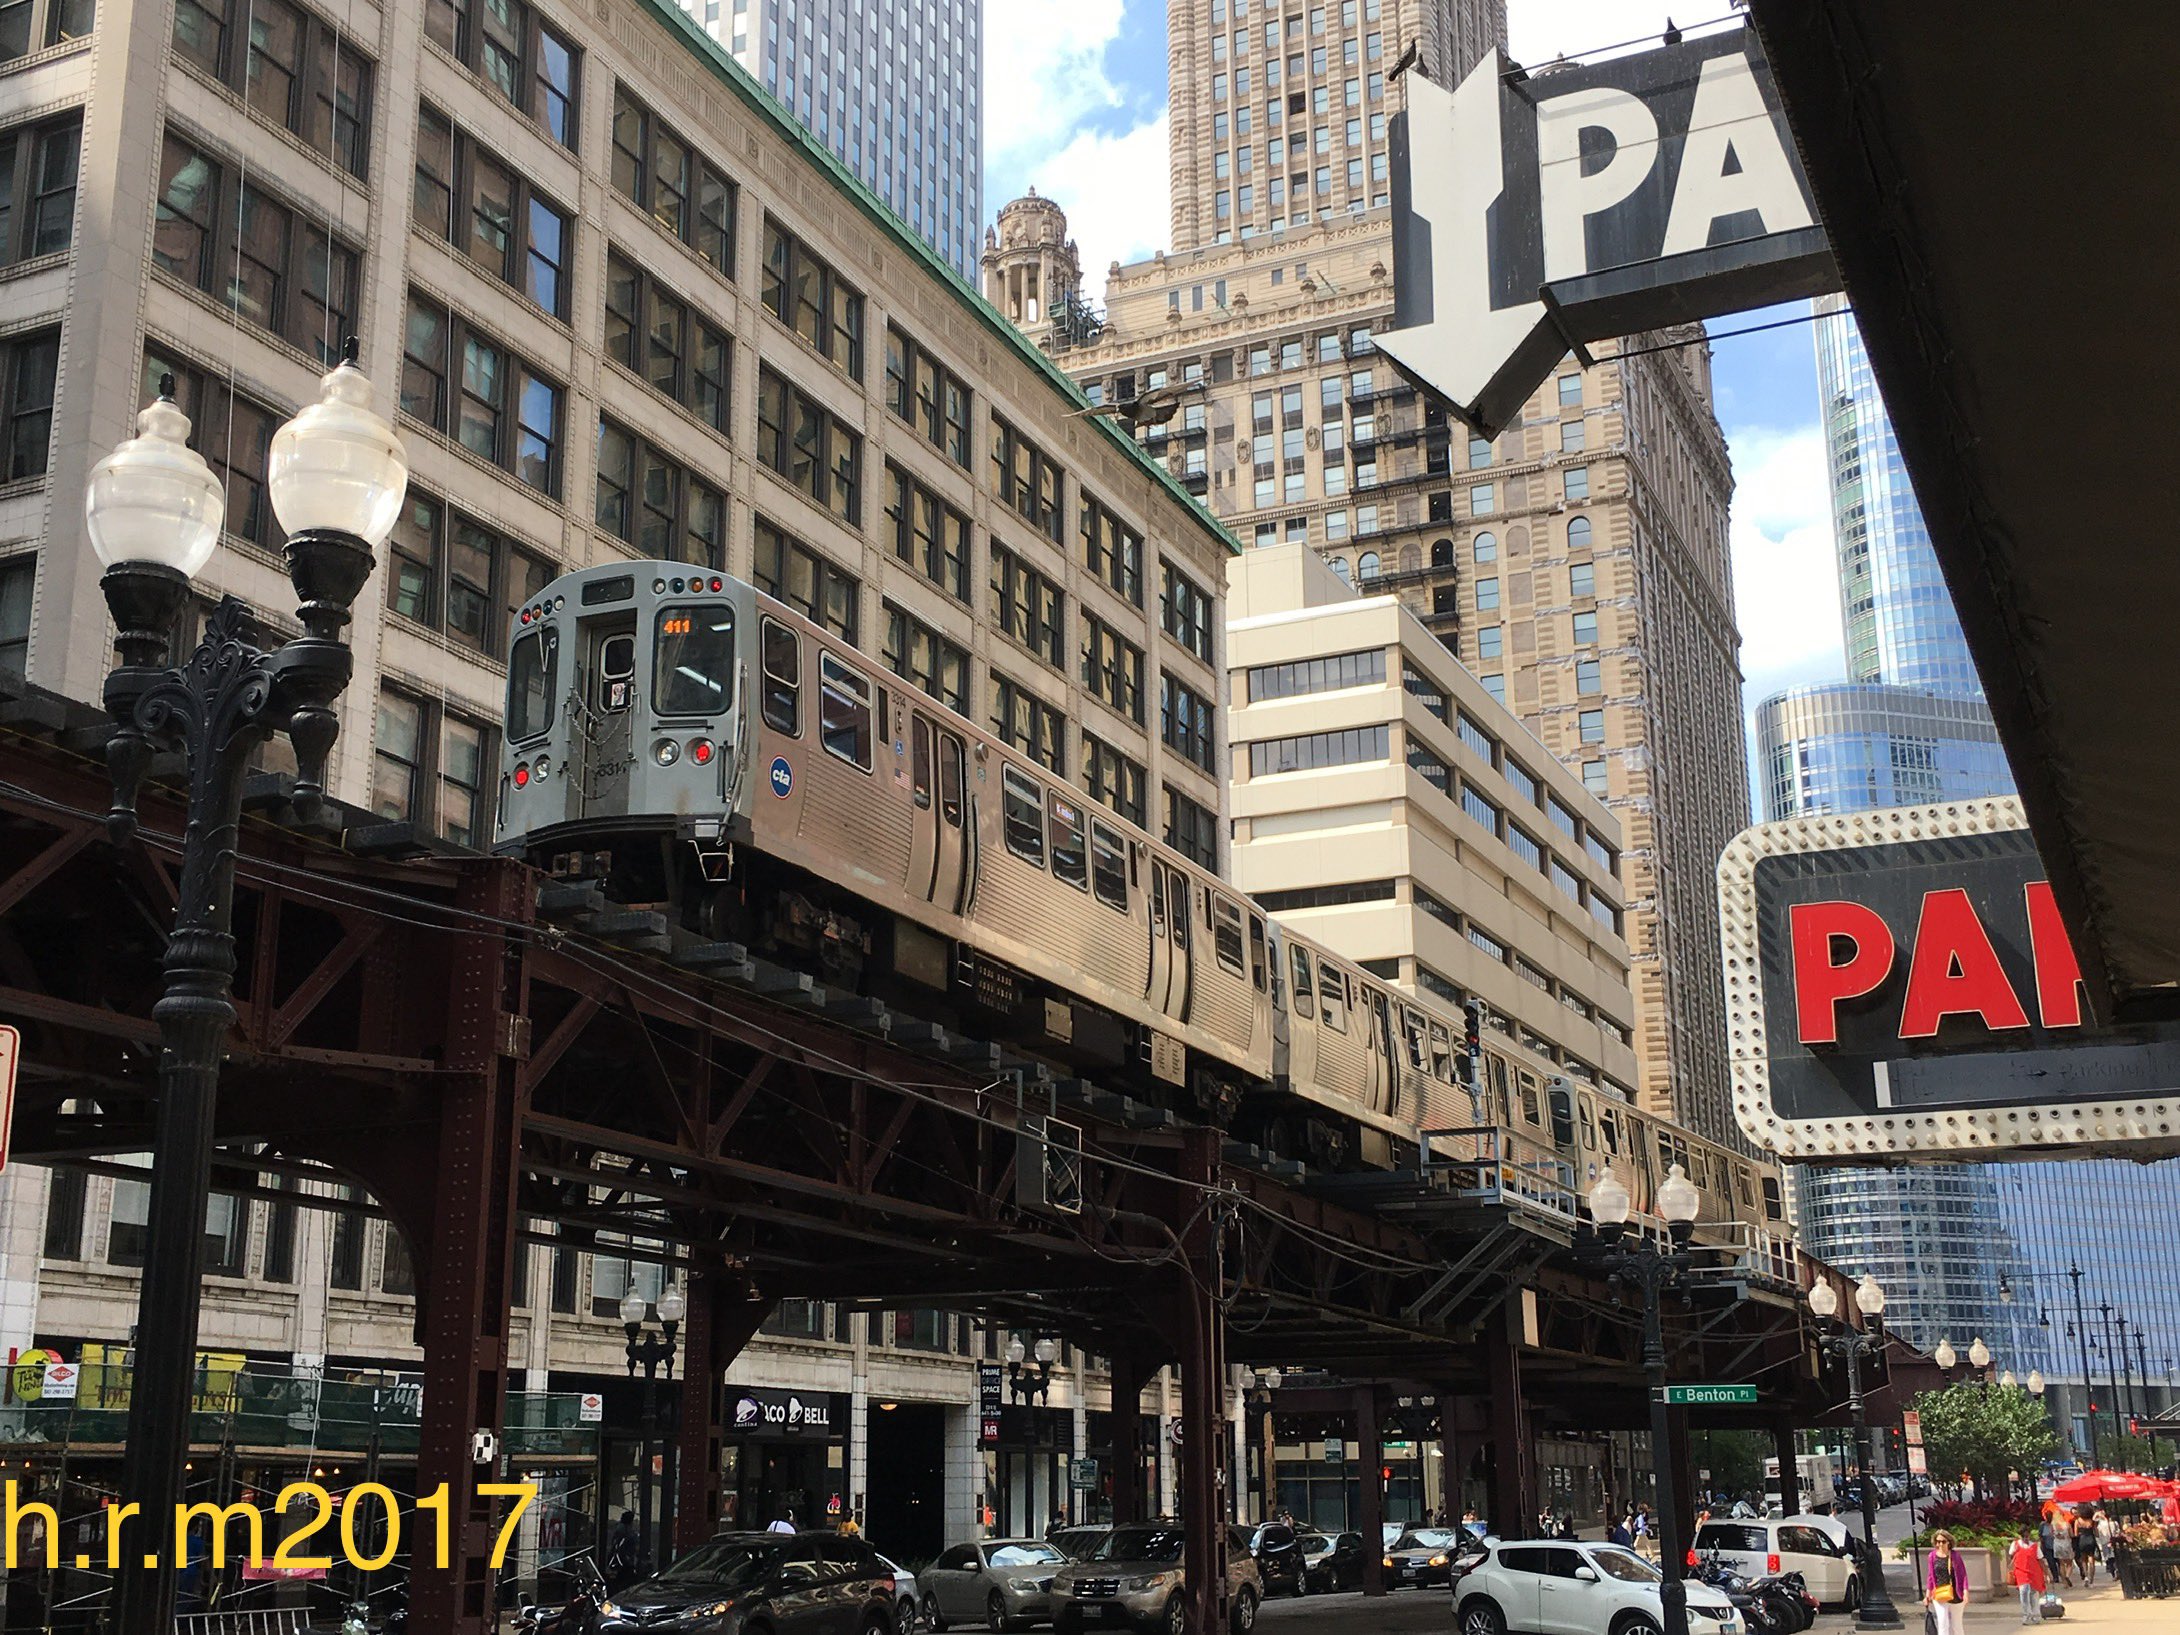 H R M17 シカゴの高架鉄道は 必ずかっこよく撮影できてしまいます どんなに適当に撮影したとしても T Co Yxfelotwej Twitter